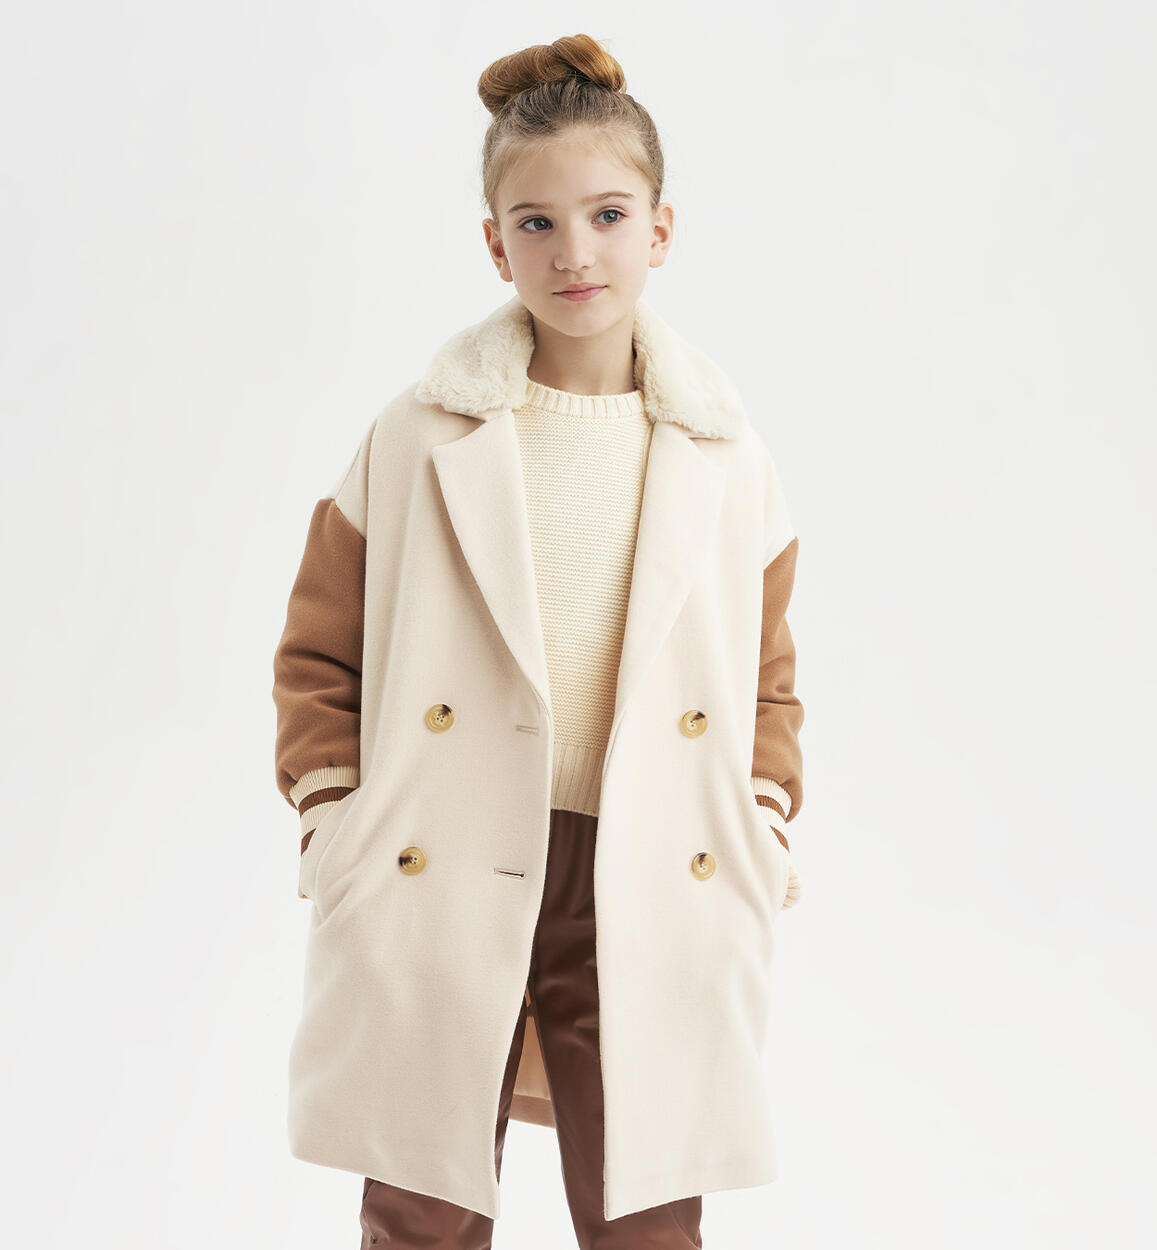 Girls' coat